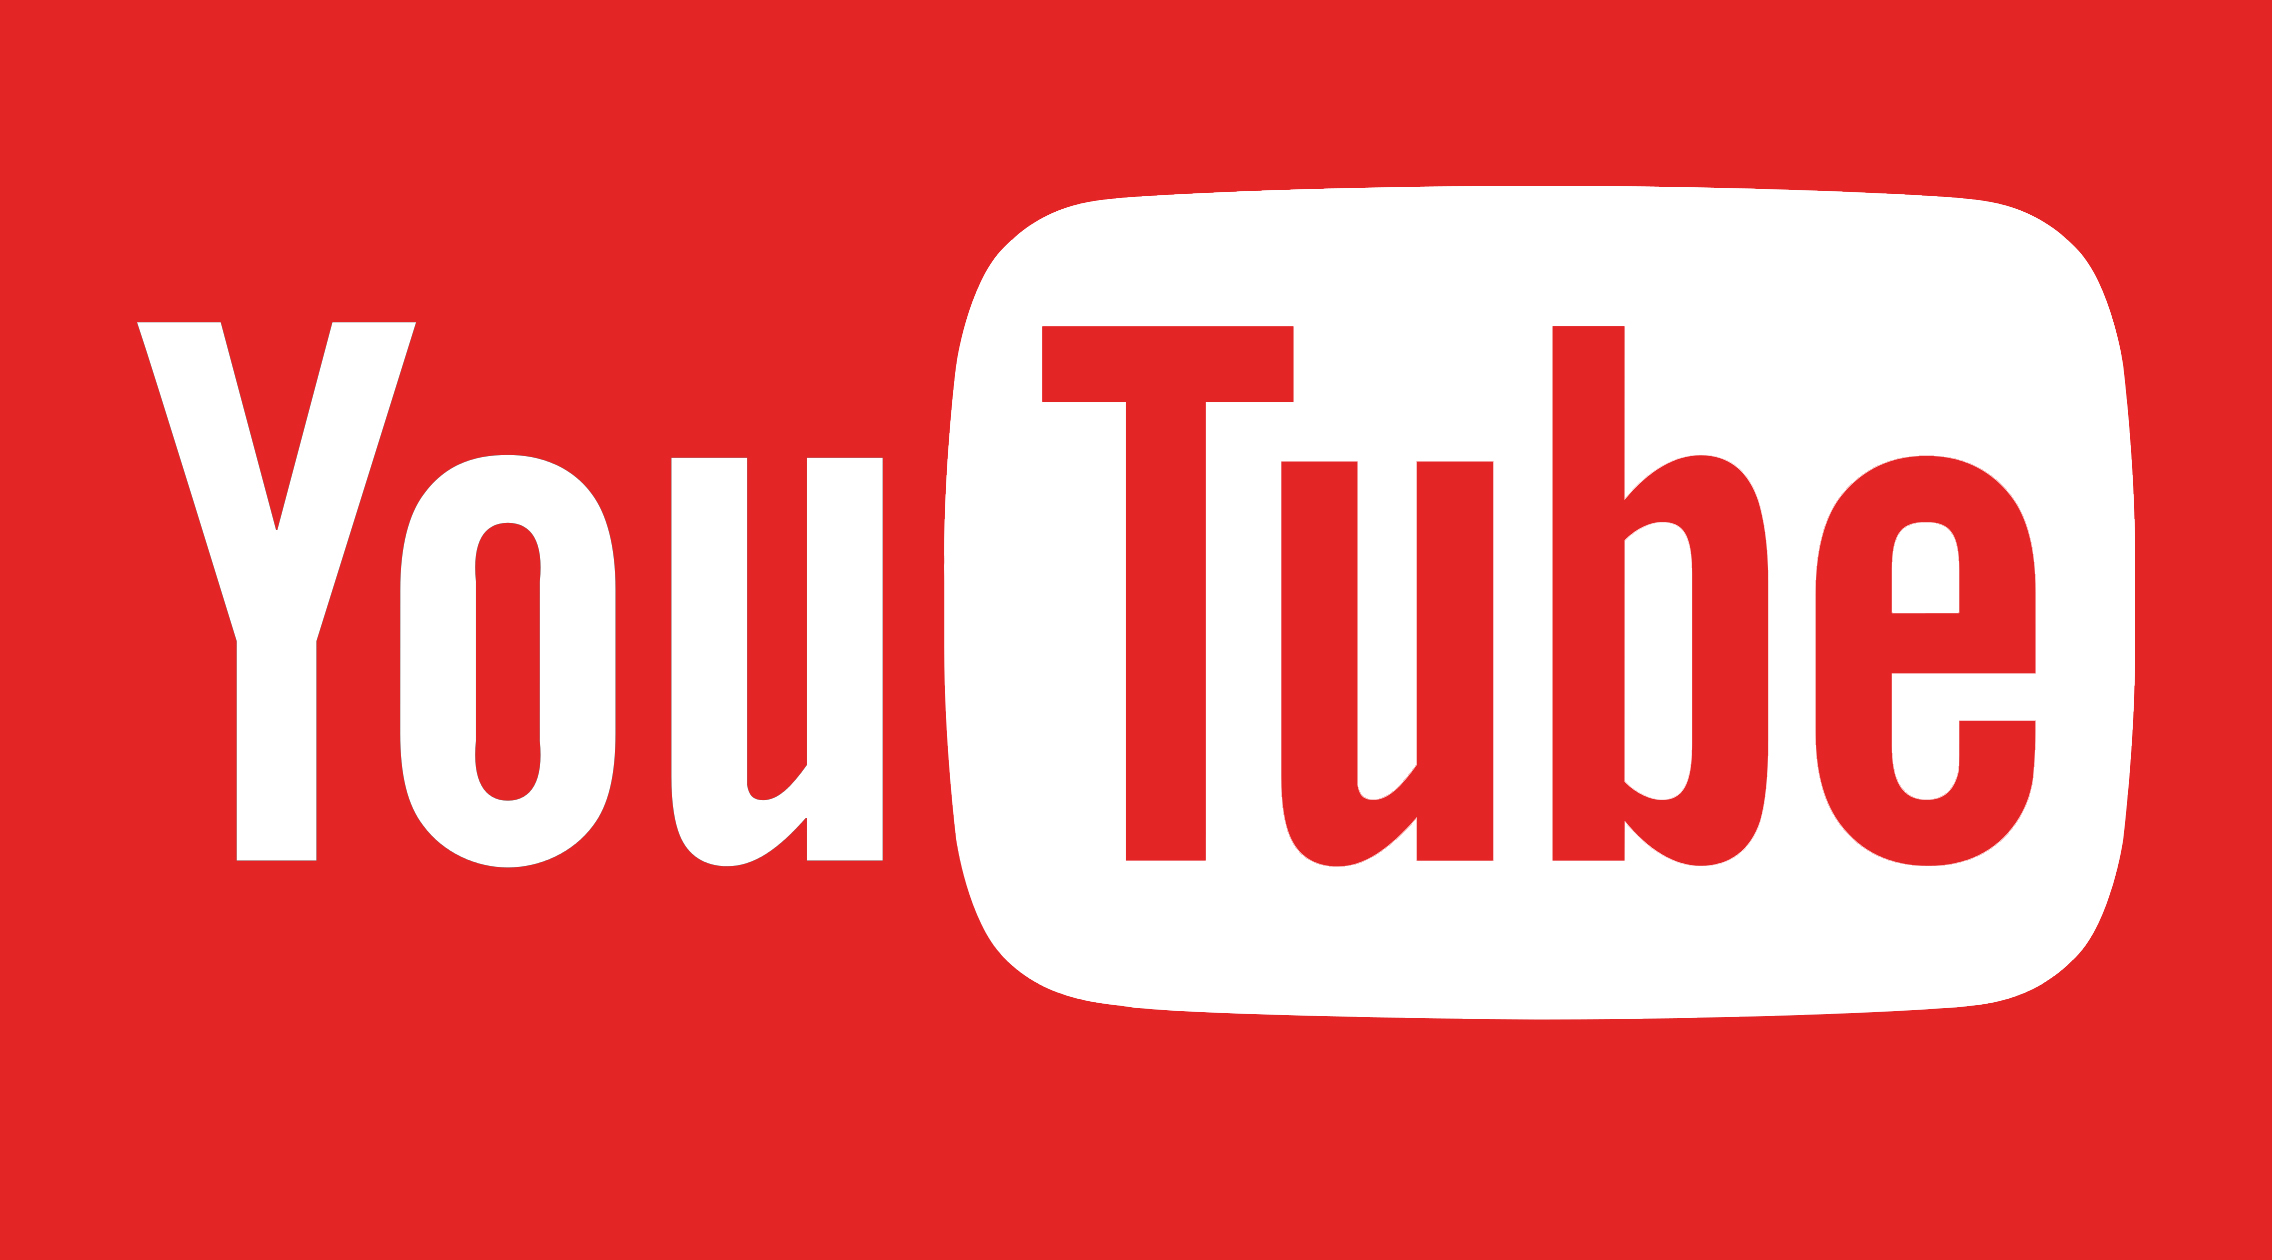 Logotipo antigo do Youtube